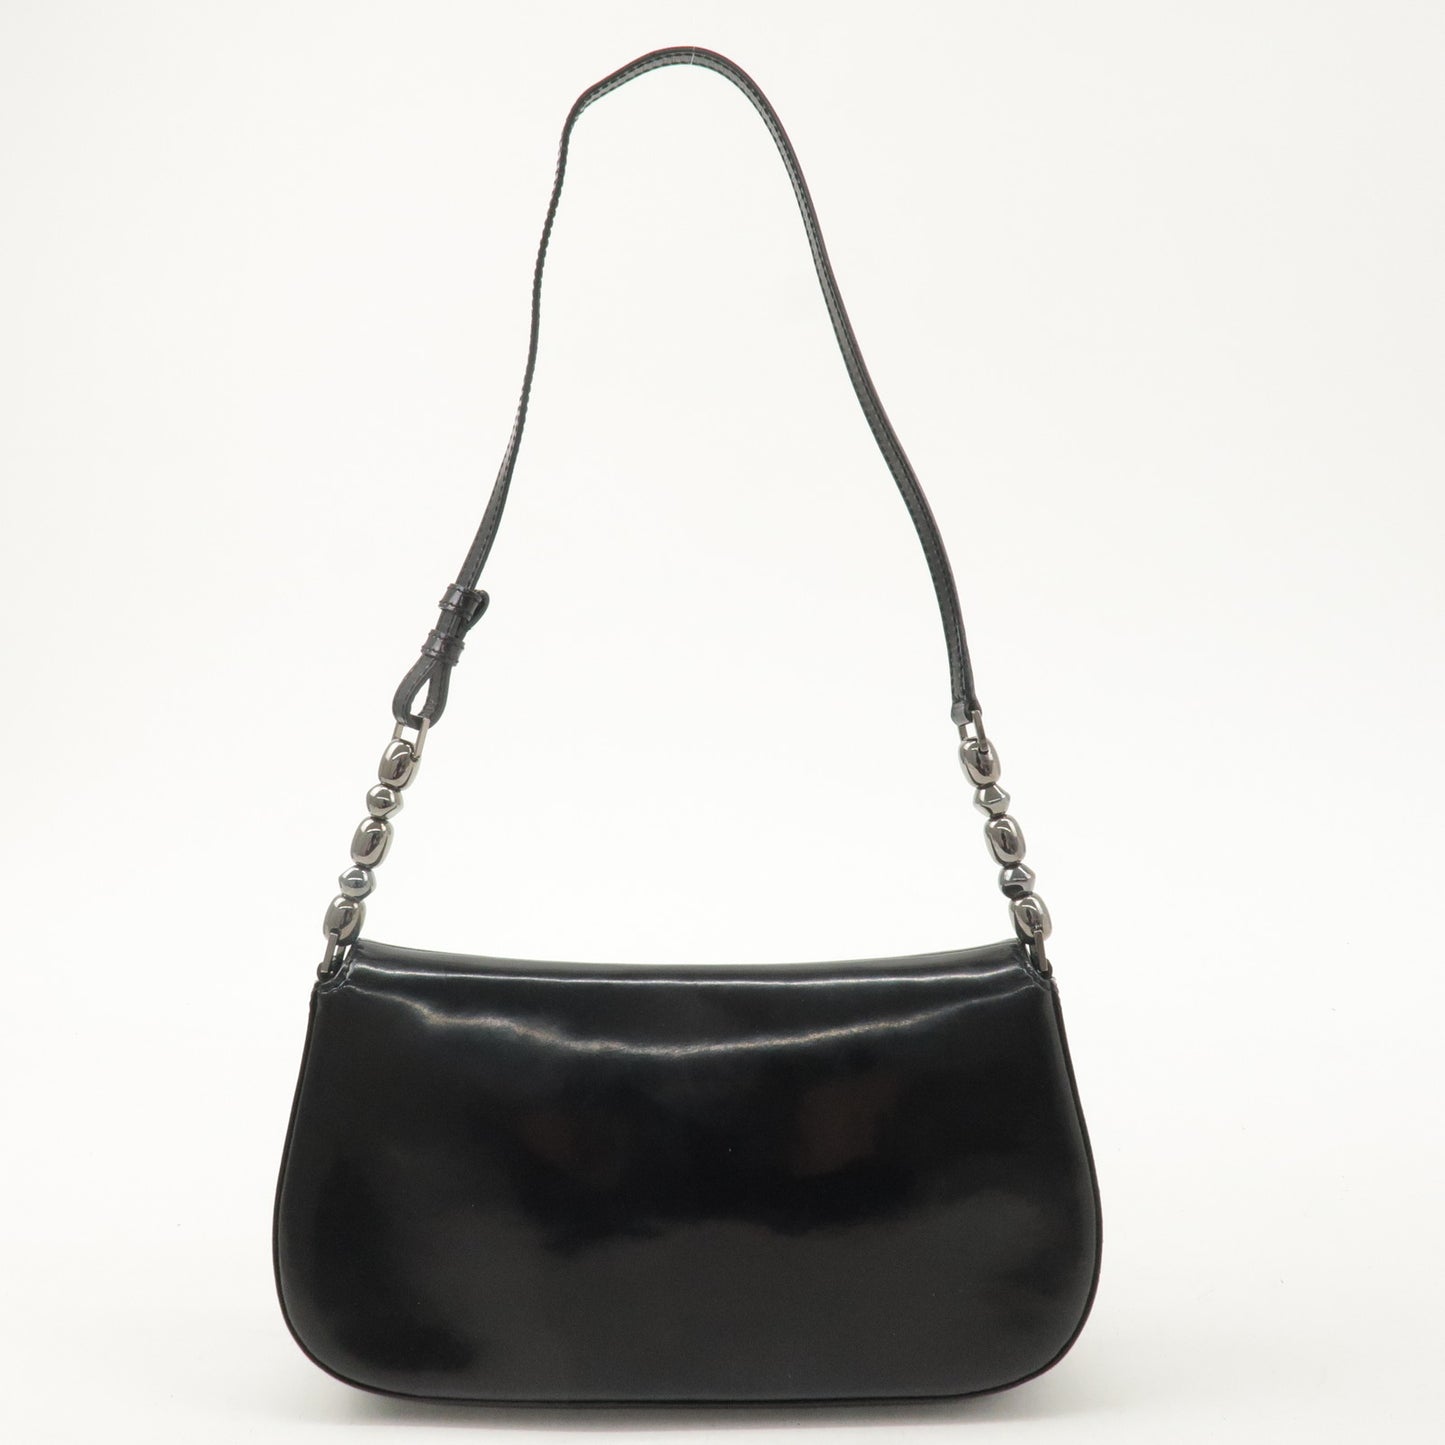 Christian Dior Enamel Leather Maris Pearl Shoulder Bag Black